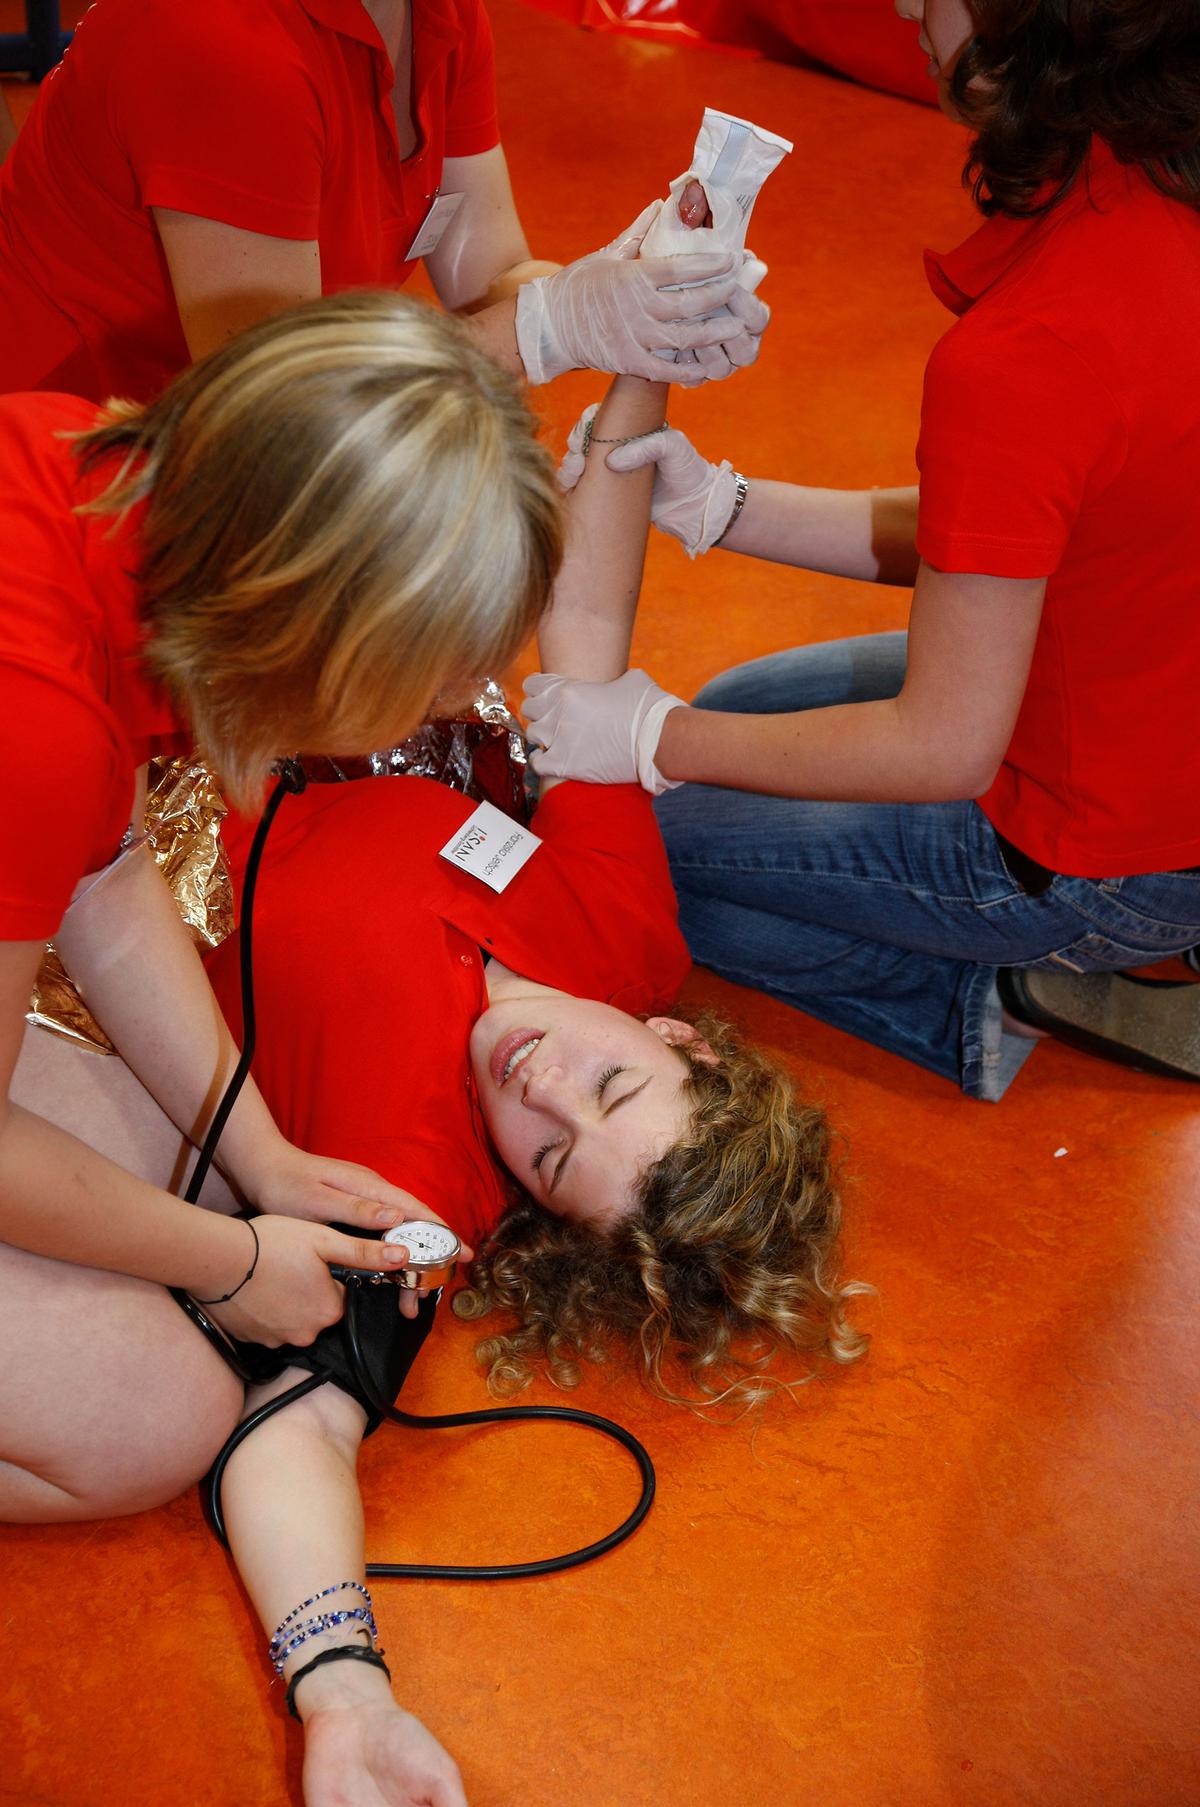 Großansicht: Schulsanitäter üben an einem Mitglied Erste-Hilfe Maßnahmen. Dabei benutzen sie eine Blutdruckmanschette um den Puls zu messen.